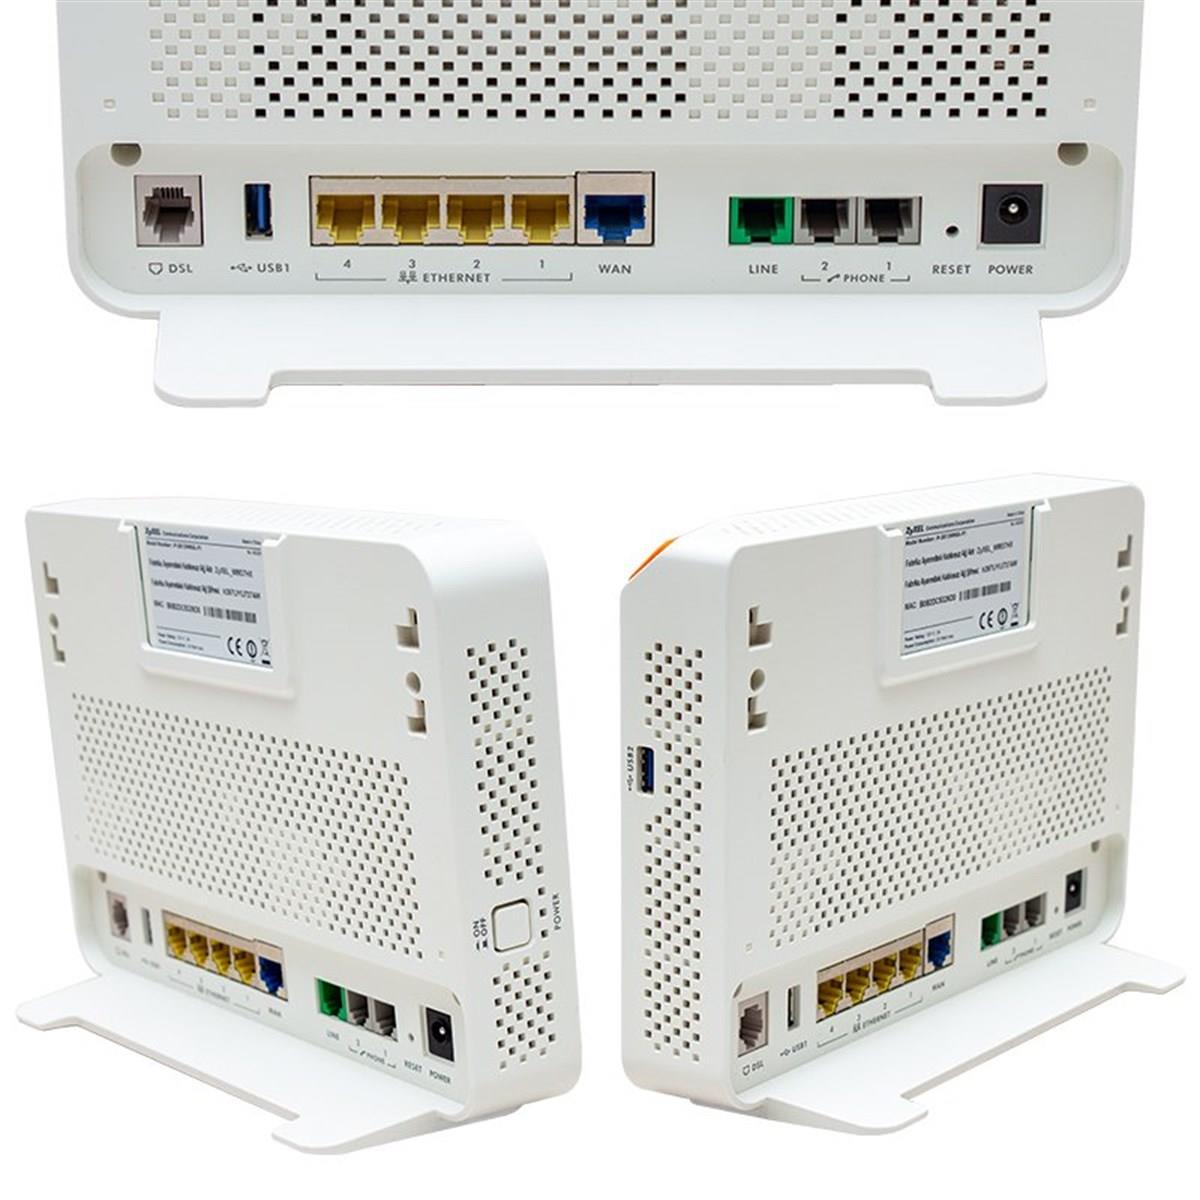 Ttnet Zyxel P-2812HNUL-F1 Çift USB 300 Mbps ADSL-VDSL Modem